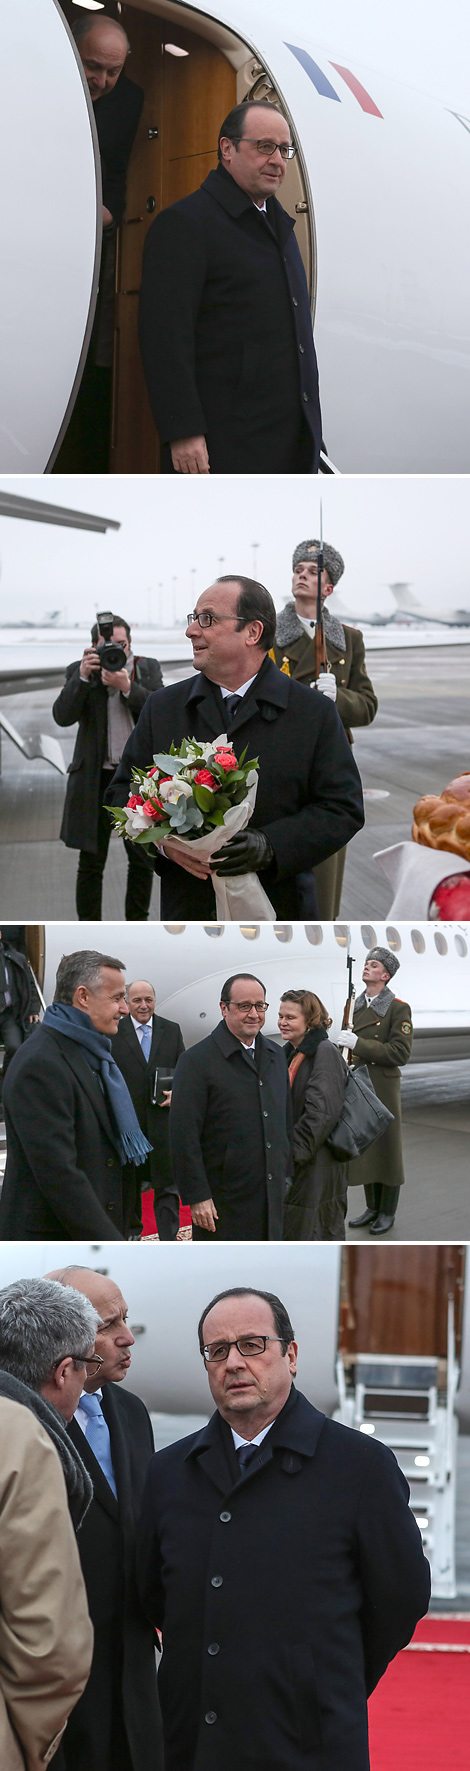 Прэзідэнт Францыі Франсуа Аланд прыбыў у Мінск